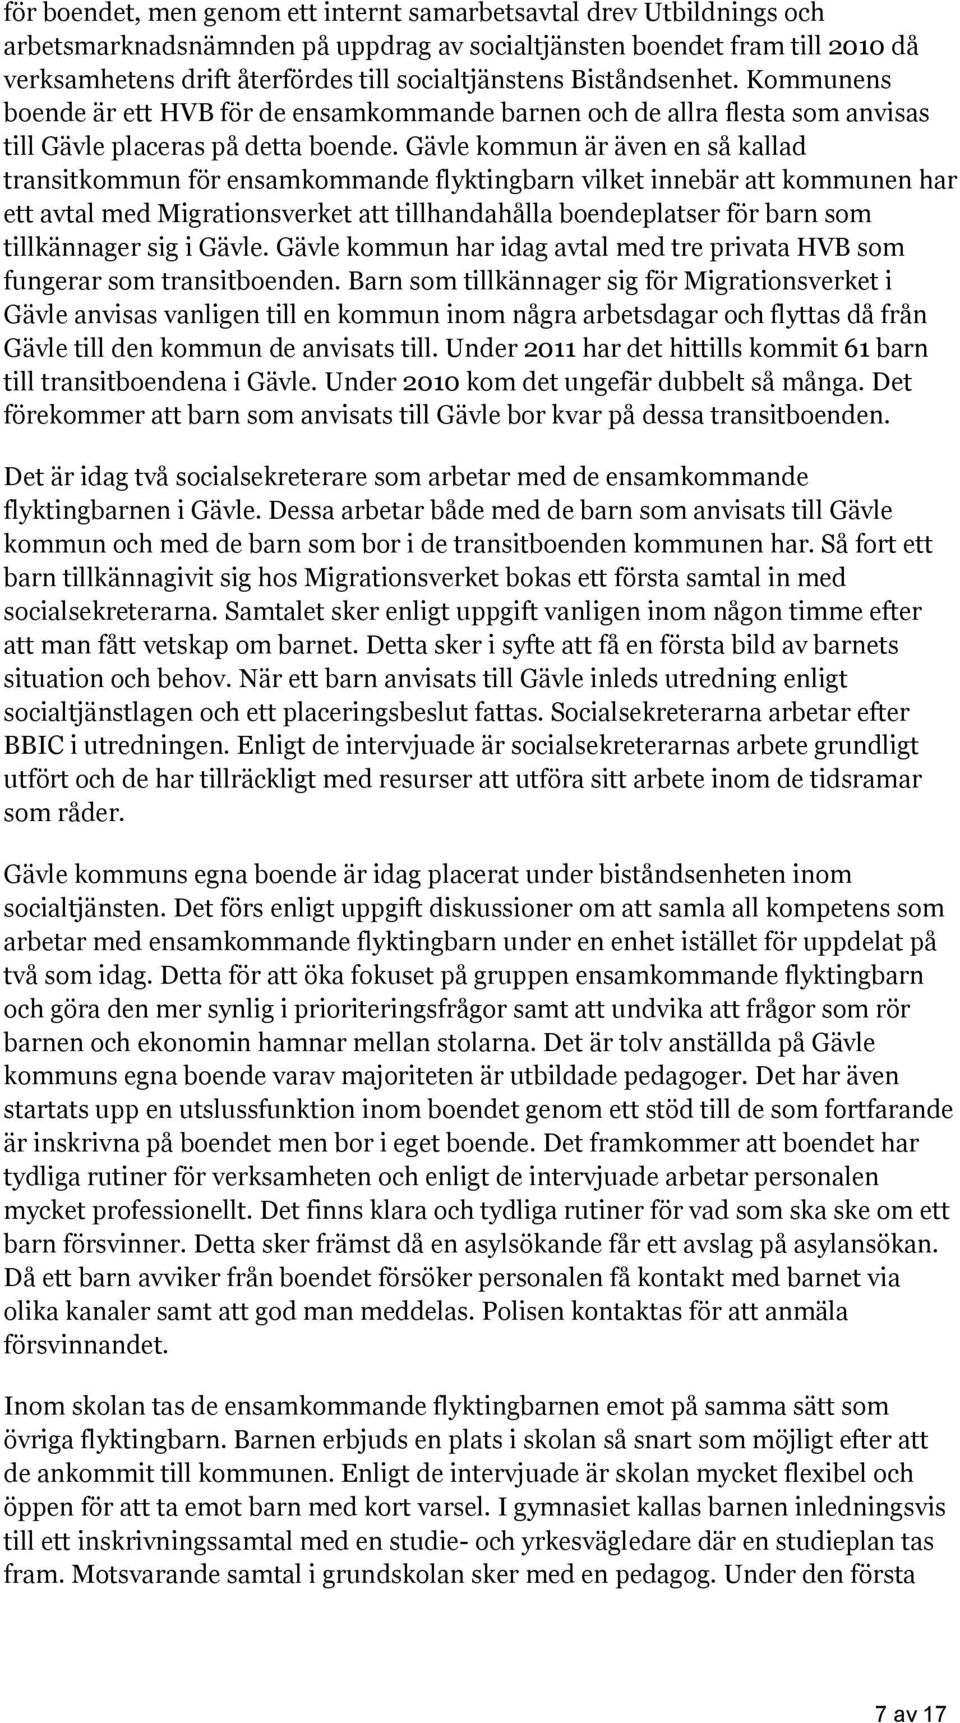 Gävle kommun är även en så kallad transitkommun för ensamkommande flyktingbarn vilket innebär att kommunen har ett avtal med Migrationsverket att tillhandahålla boendeplatser för barn som